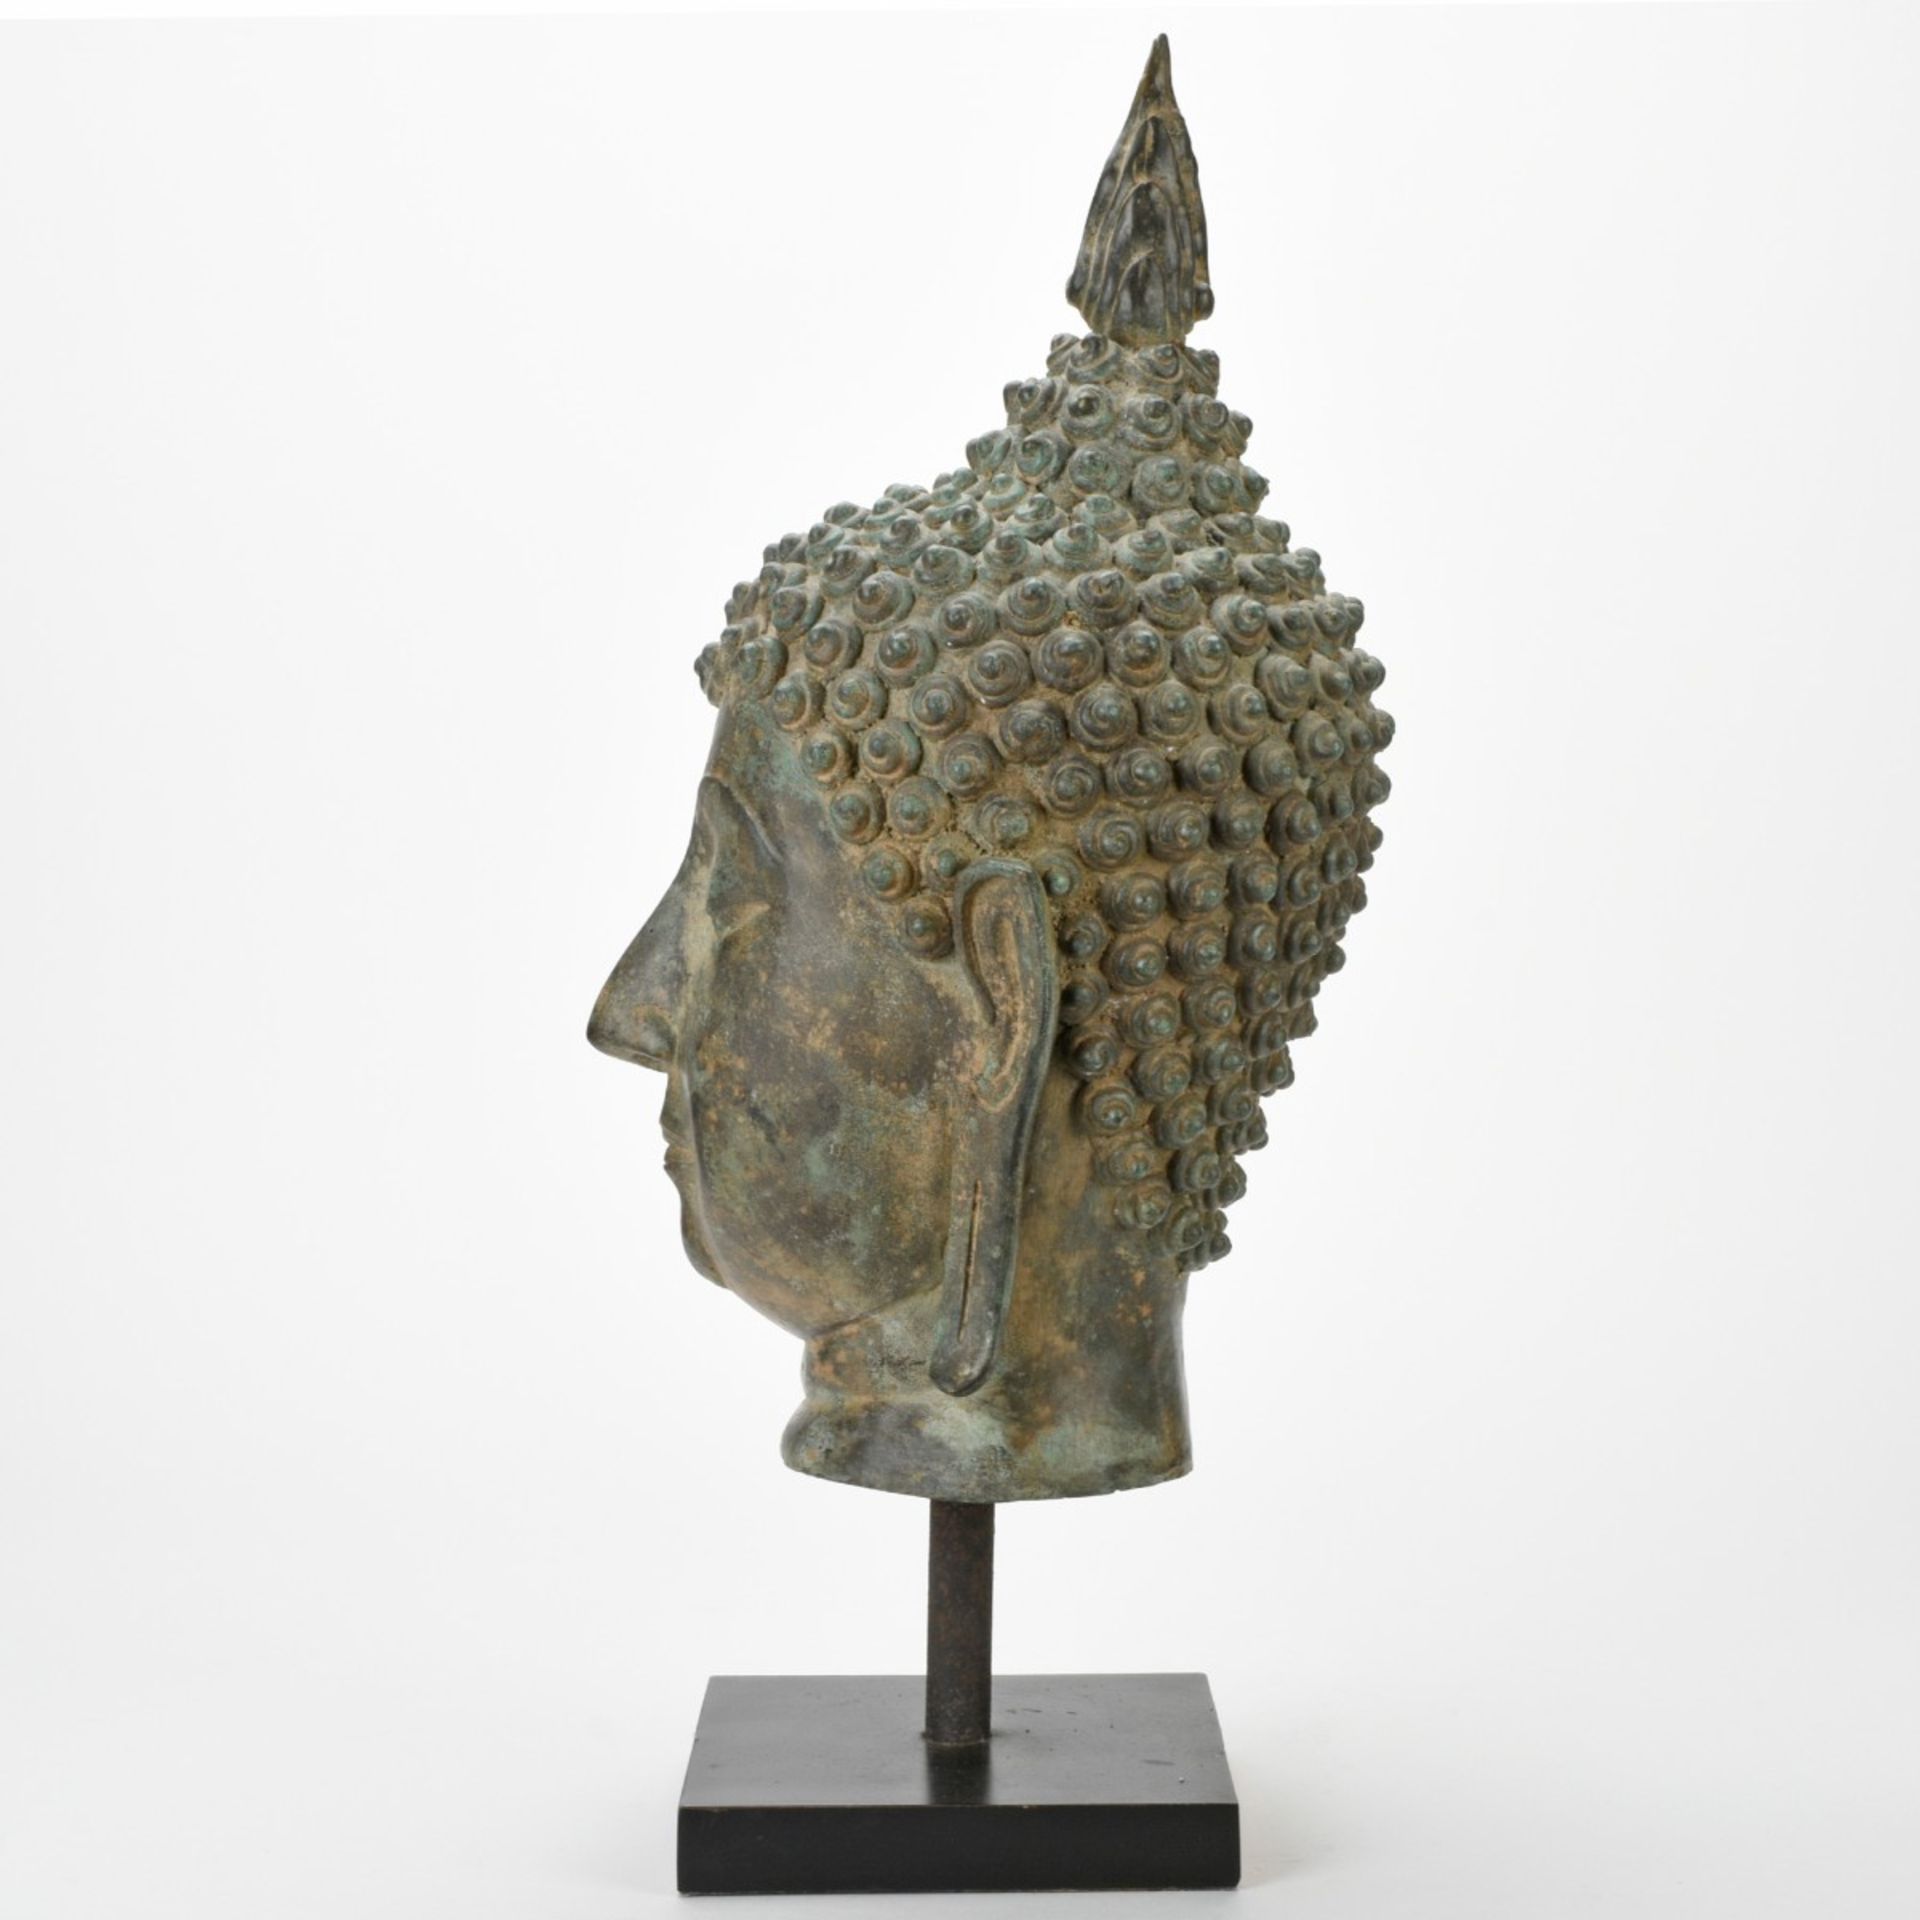 Buddhahaupt - Image 6 of 6